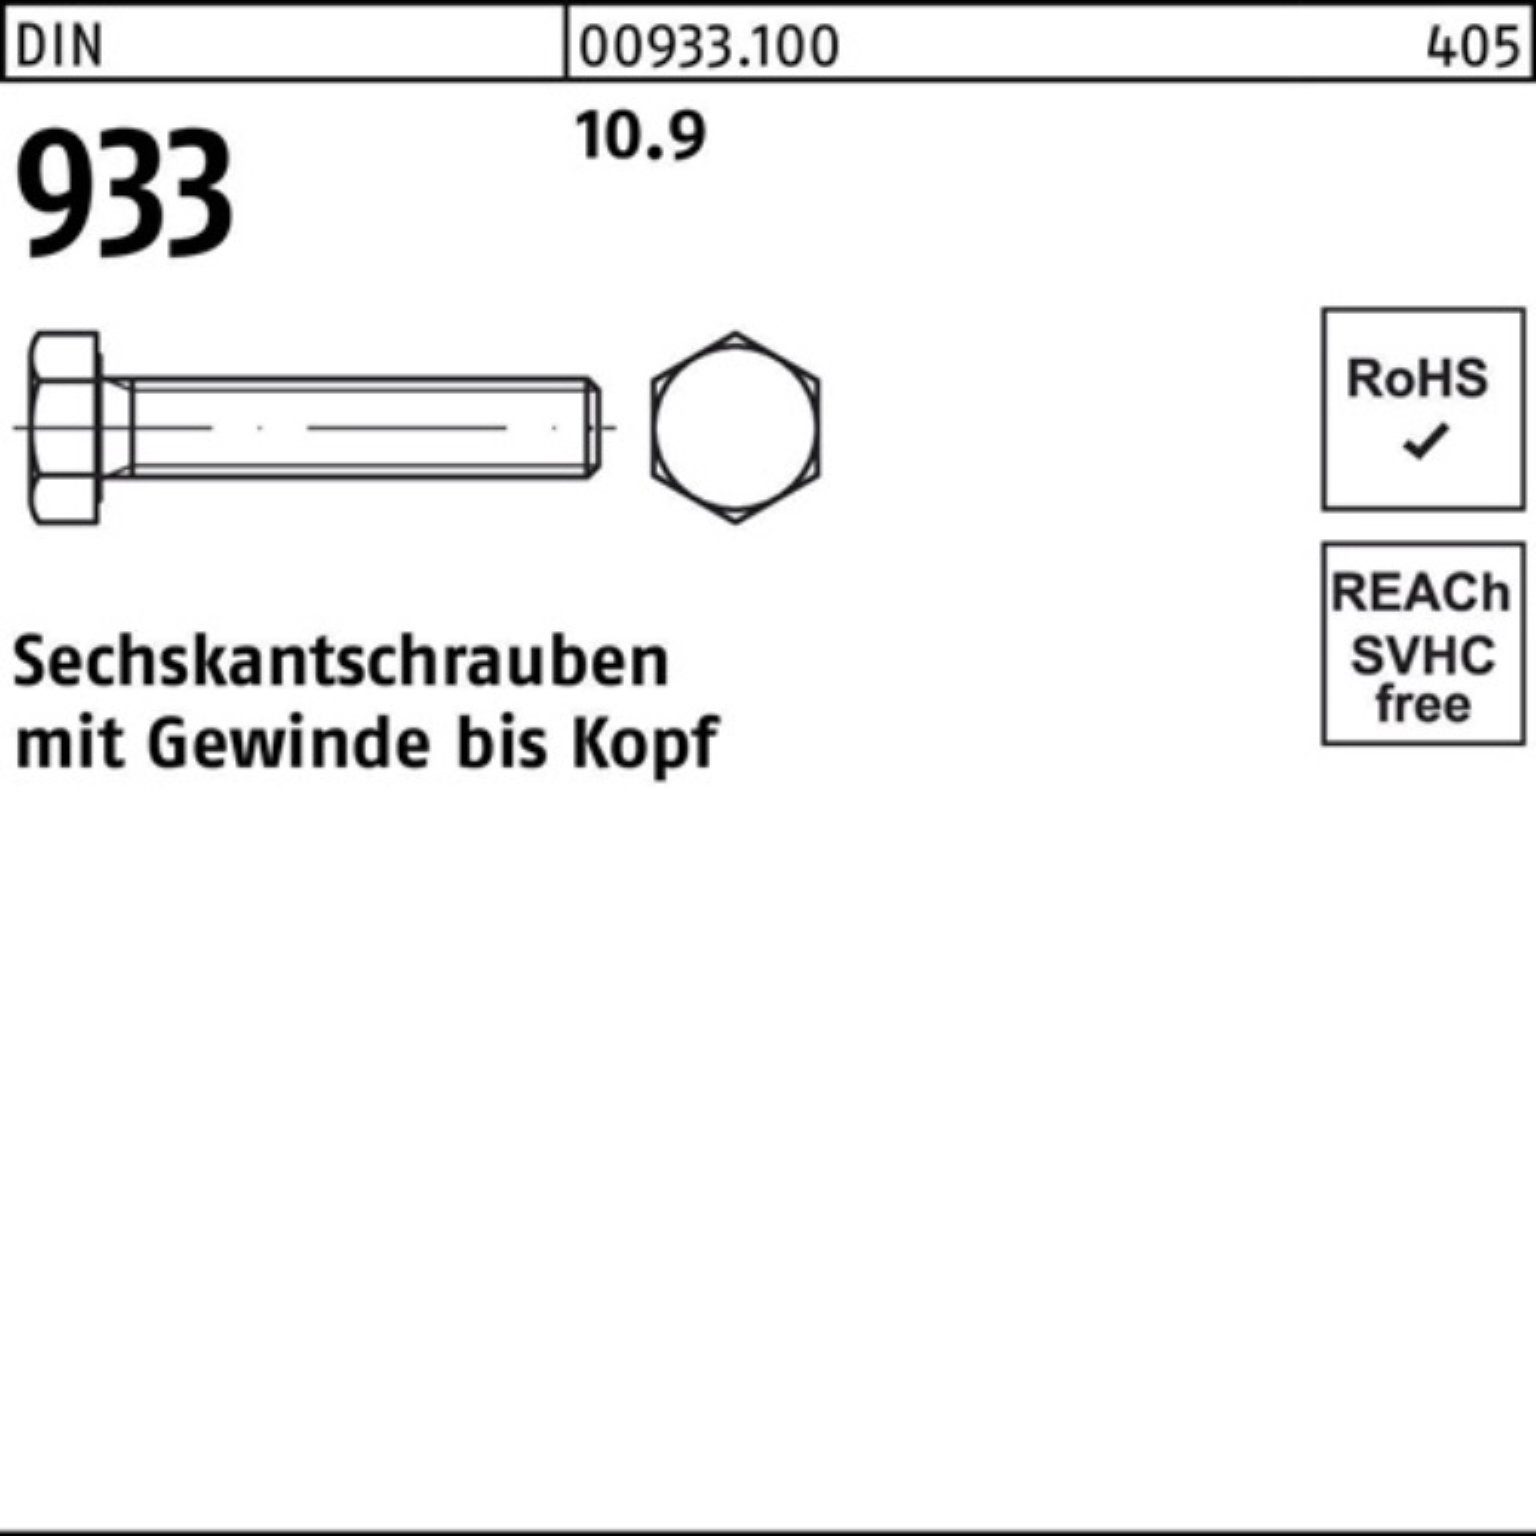 Reyher Sechskantschraube 10.9 DIN 93 100er 100 933 Pack Sechskantschraube Stück VG 65 DIN M10x